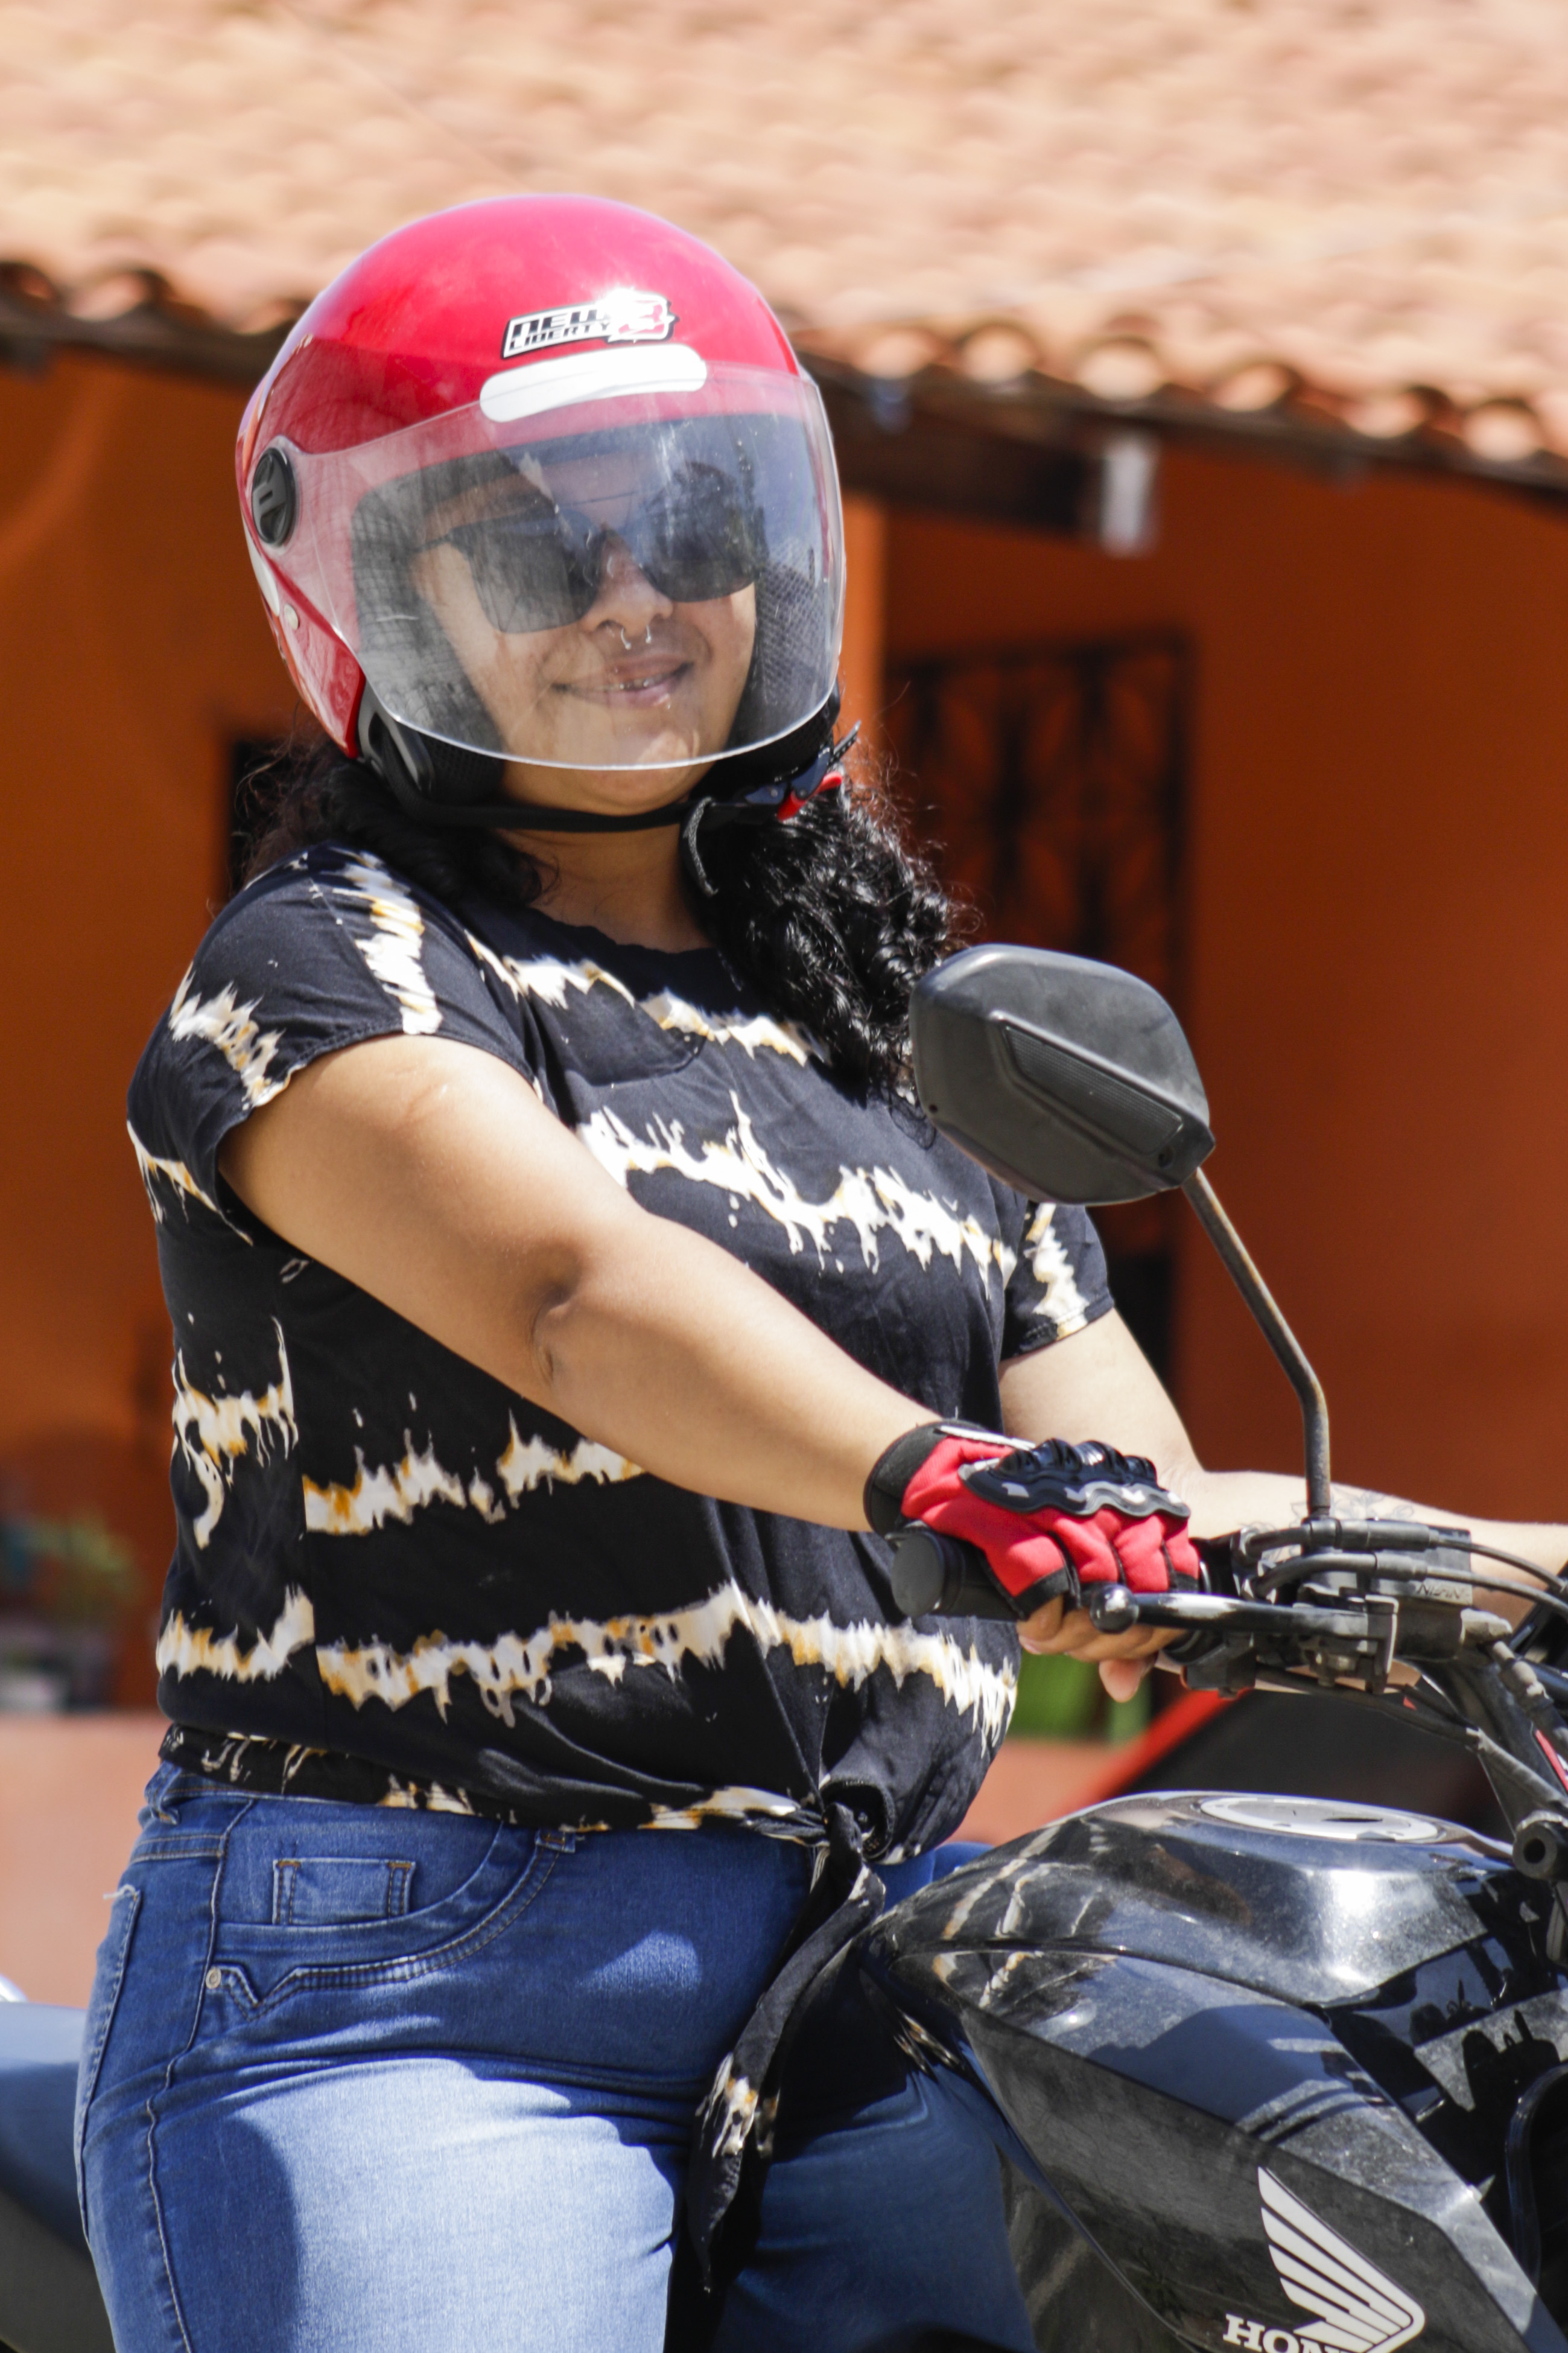 Especial Sobre duas rodas: Ana Paula perdia horas de seu dia antes da motociclista e precisava do transporte coletivo(Foto: Thais Mesquita / O POVO)